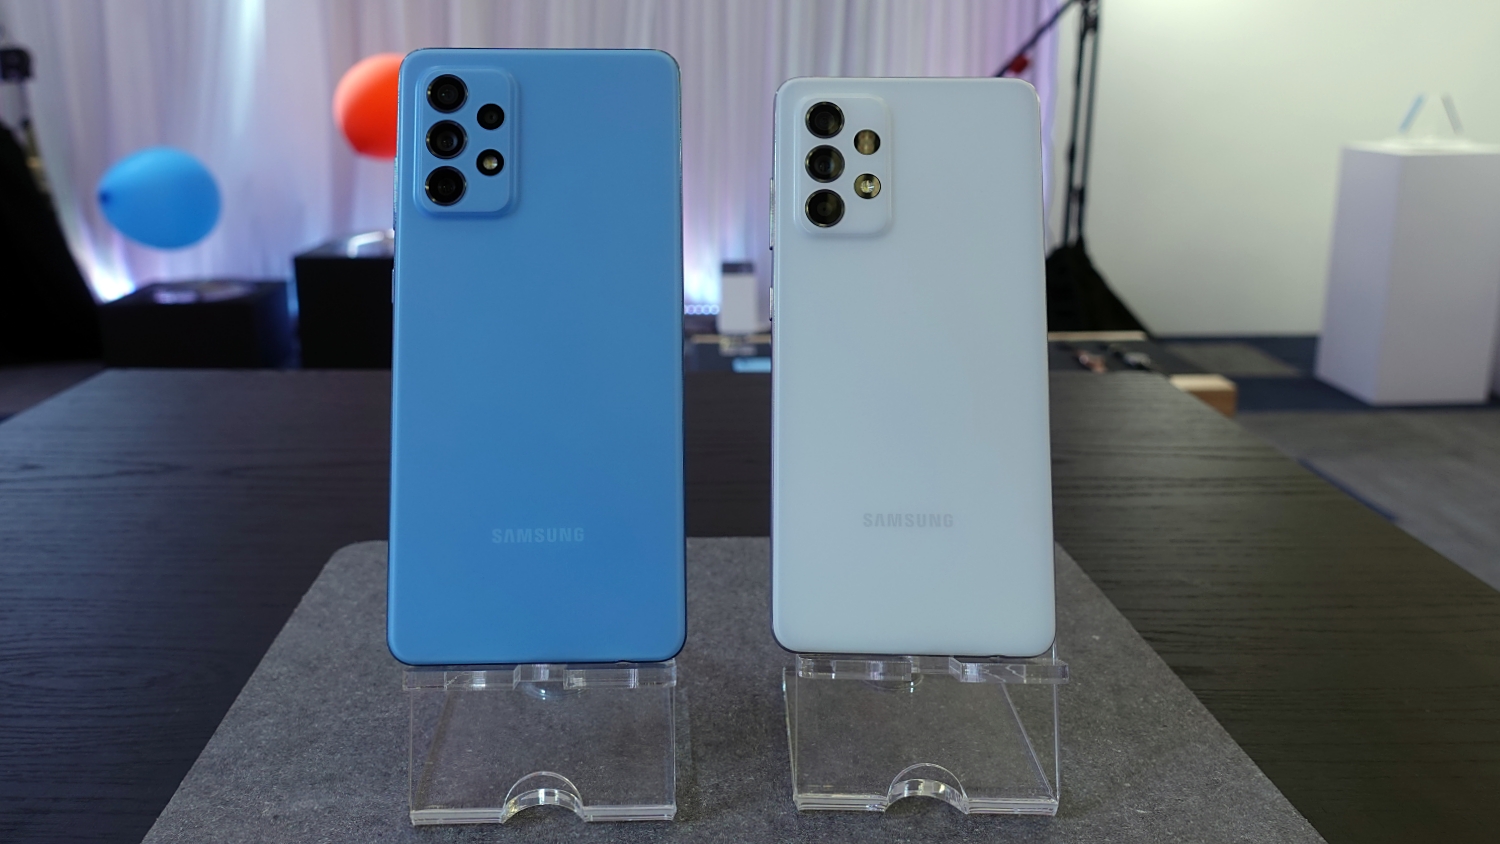 Pandang Pertama Samsung Galaxy A52 Dan Galaxy A72 – Kombinasi Elemen Lebih Baik Dengan Gaya Premium